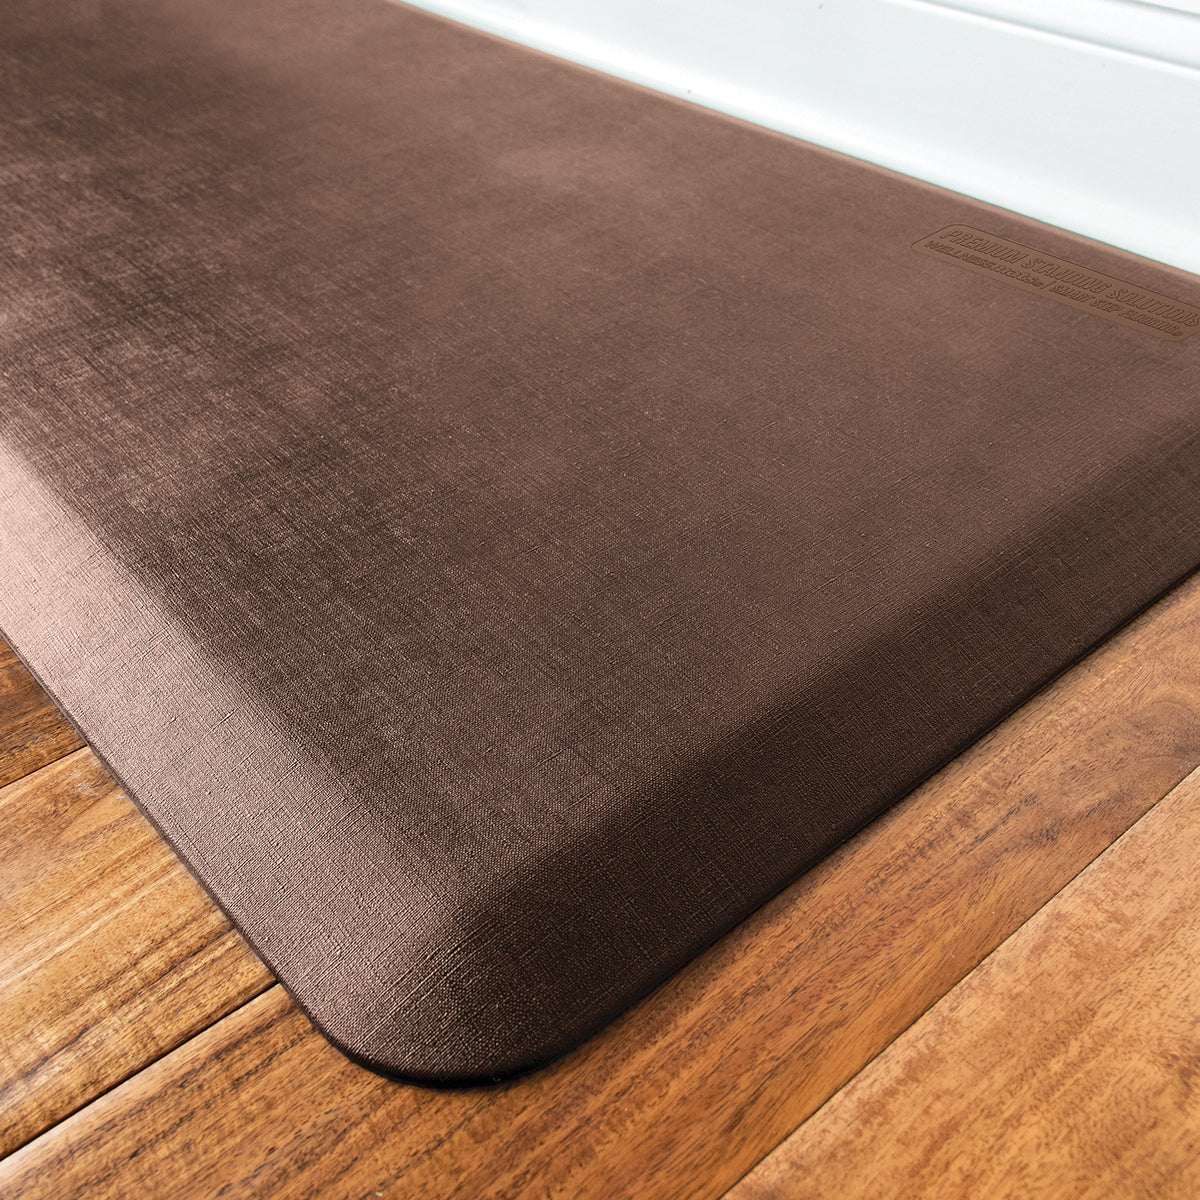 GelPro Comfort Kitchen Mat Anti Fatigue Floor Elite Vintage Leather Rustic Brown